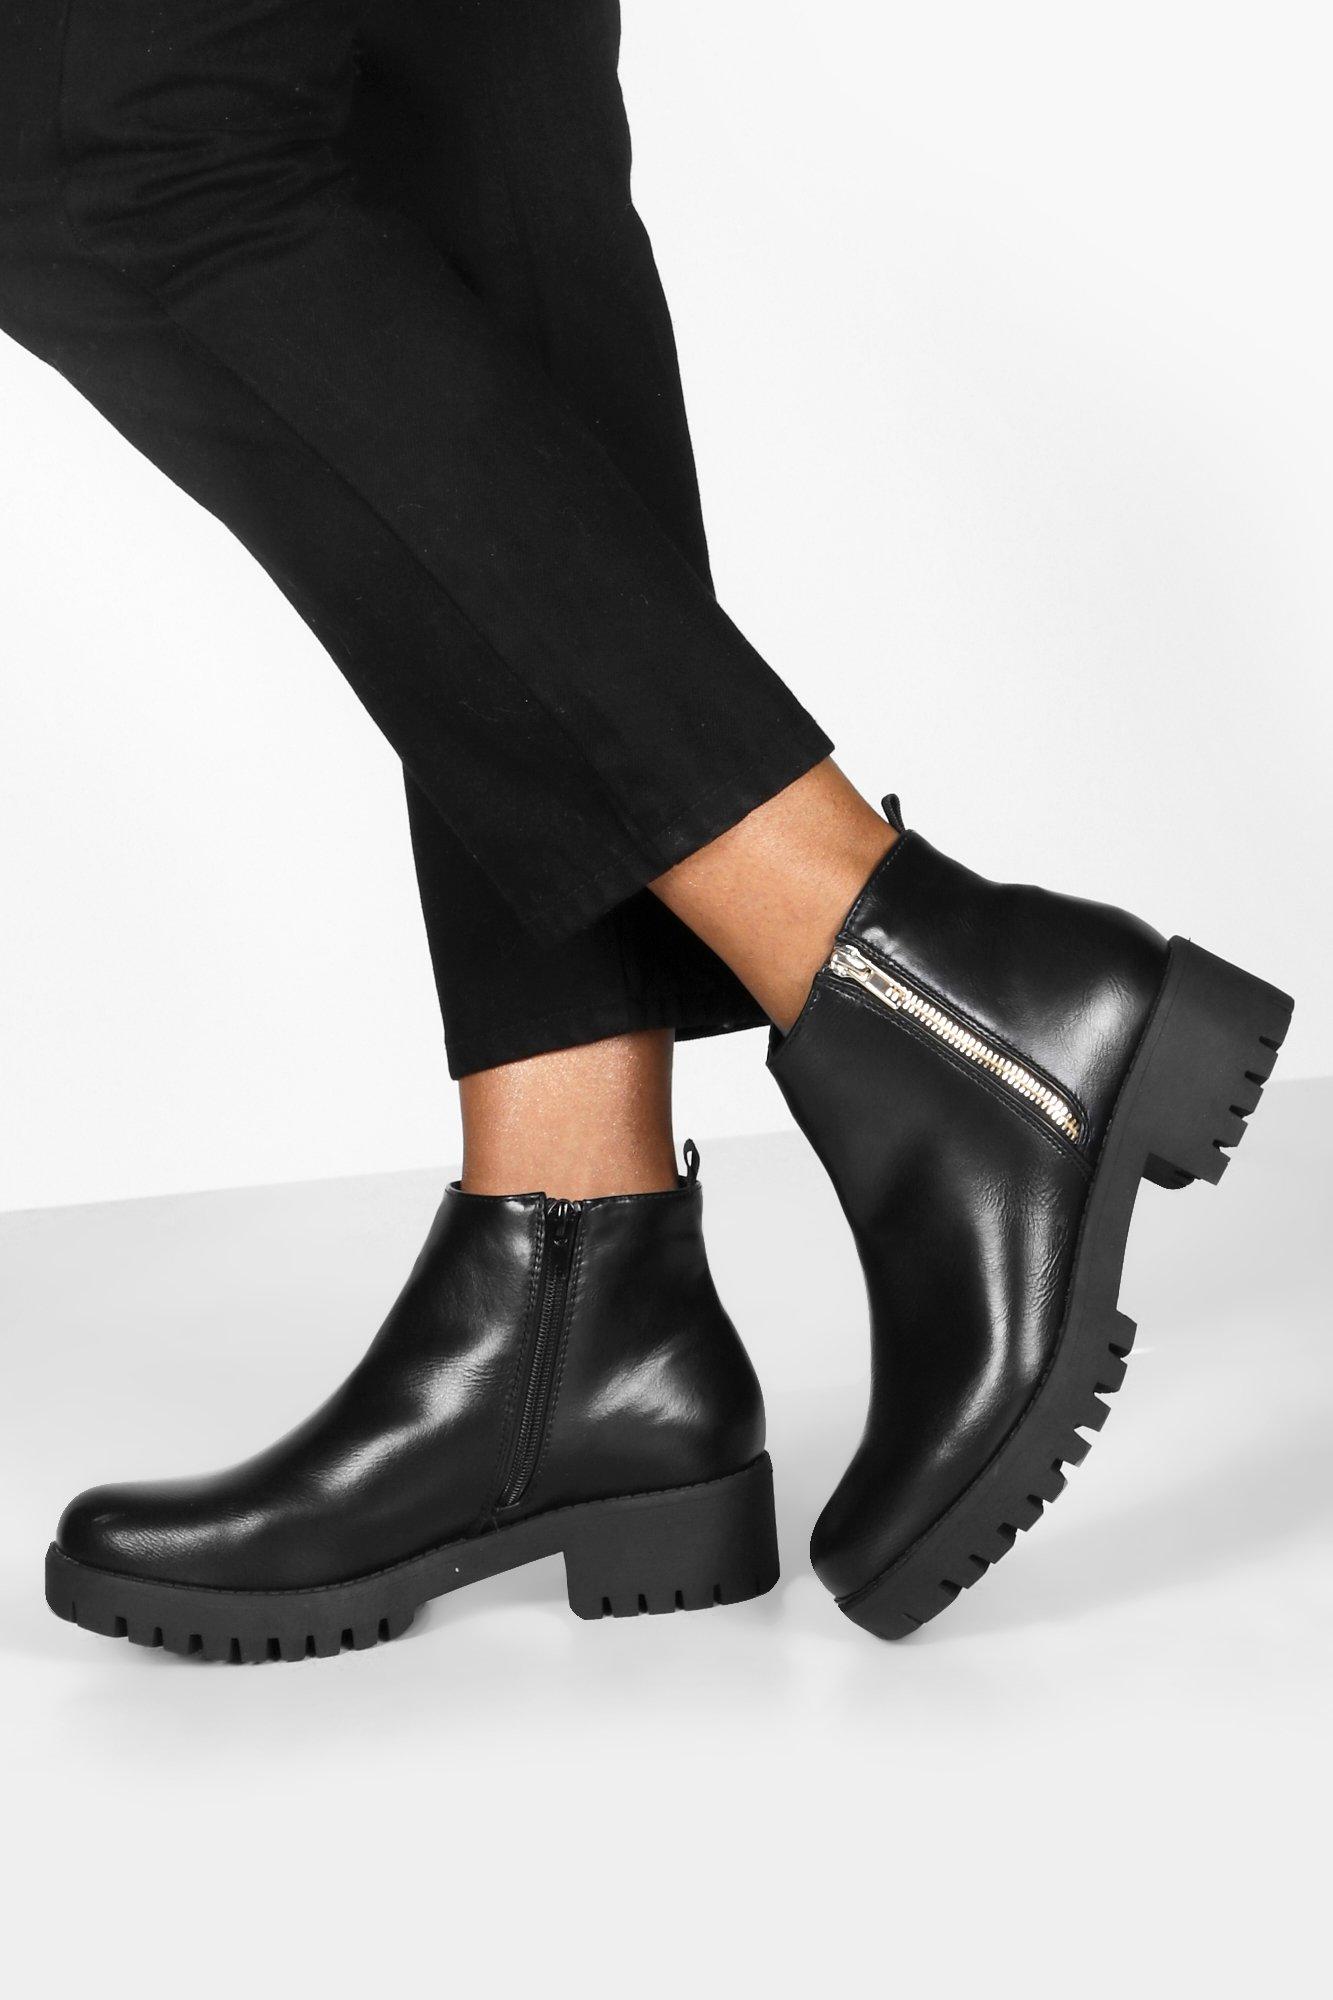 Women's Chelsea Boots | Flat/Heeled, Black/Tan/Brown Suede Booties